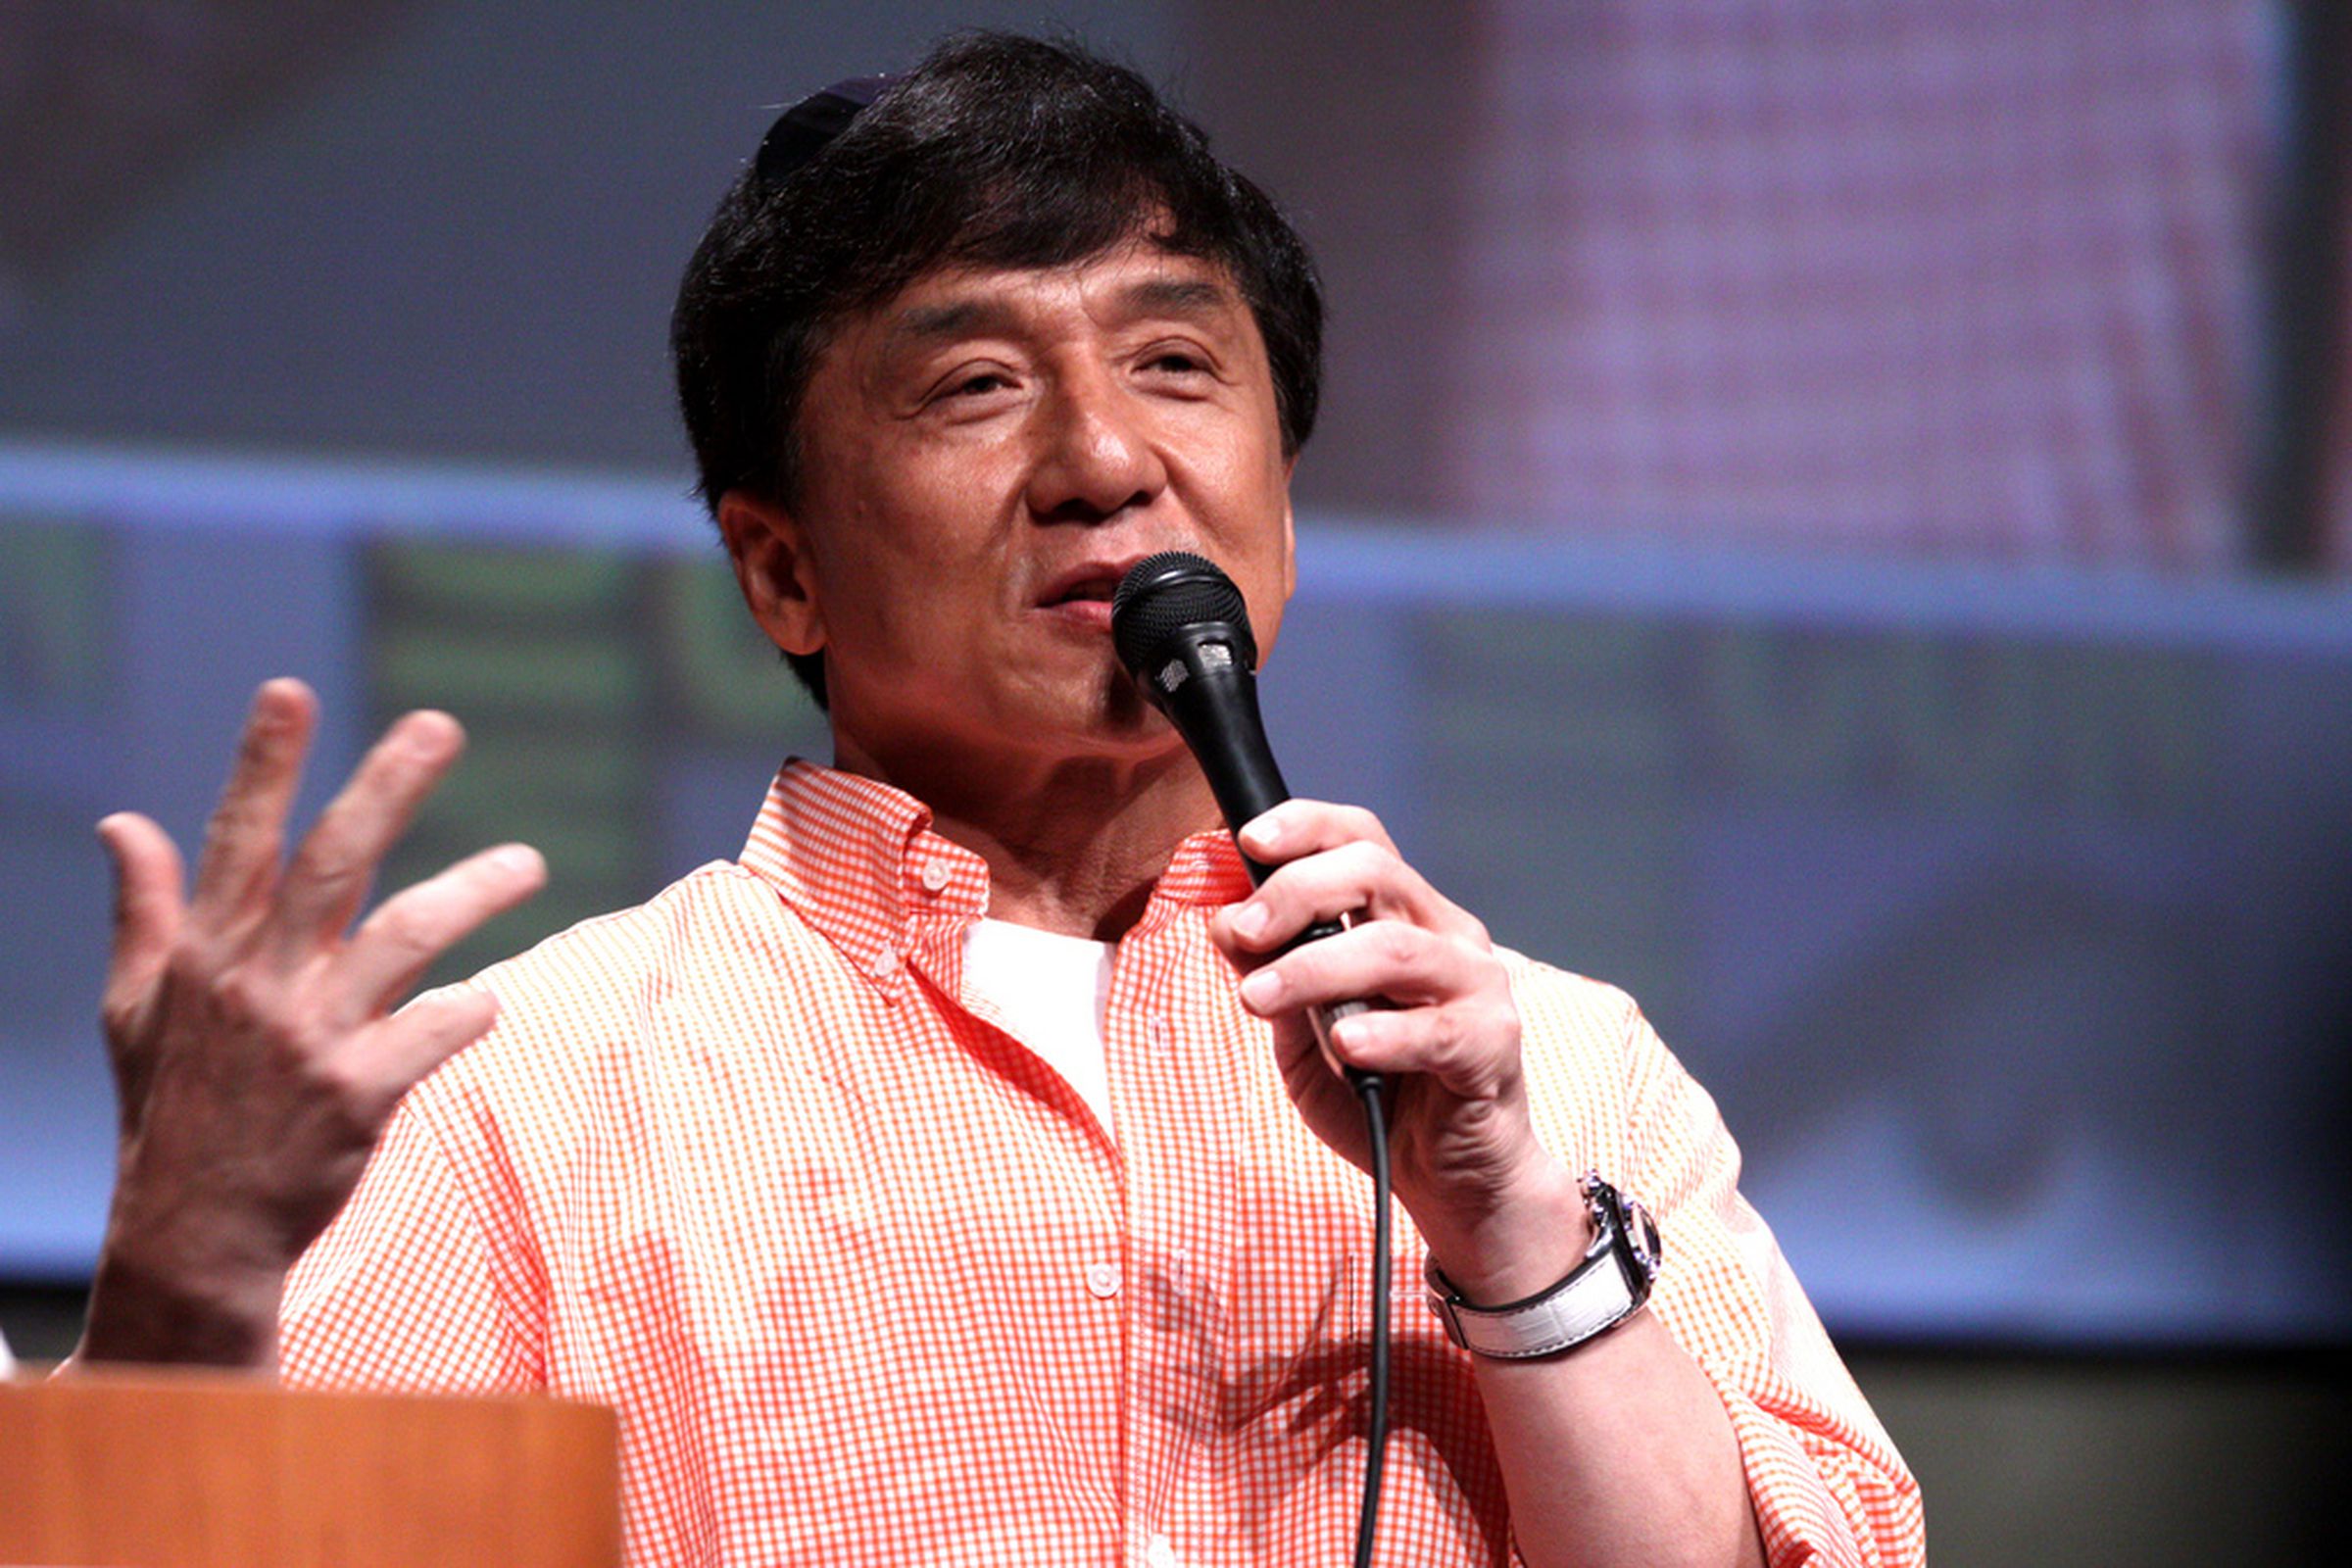 Jackie Chan via Gage Skidmore on Flickr